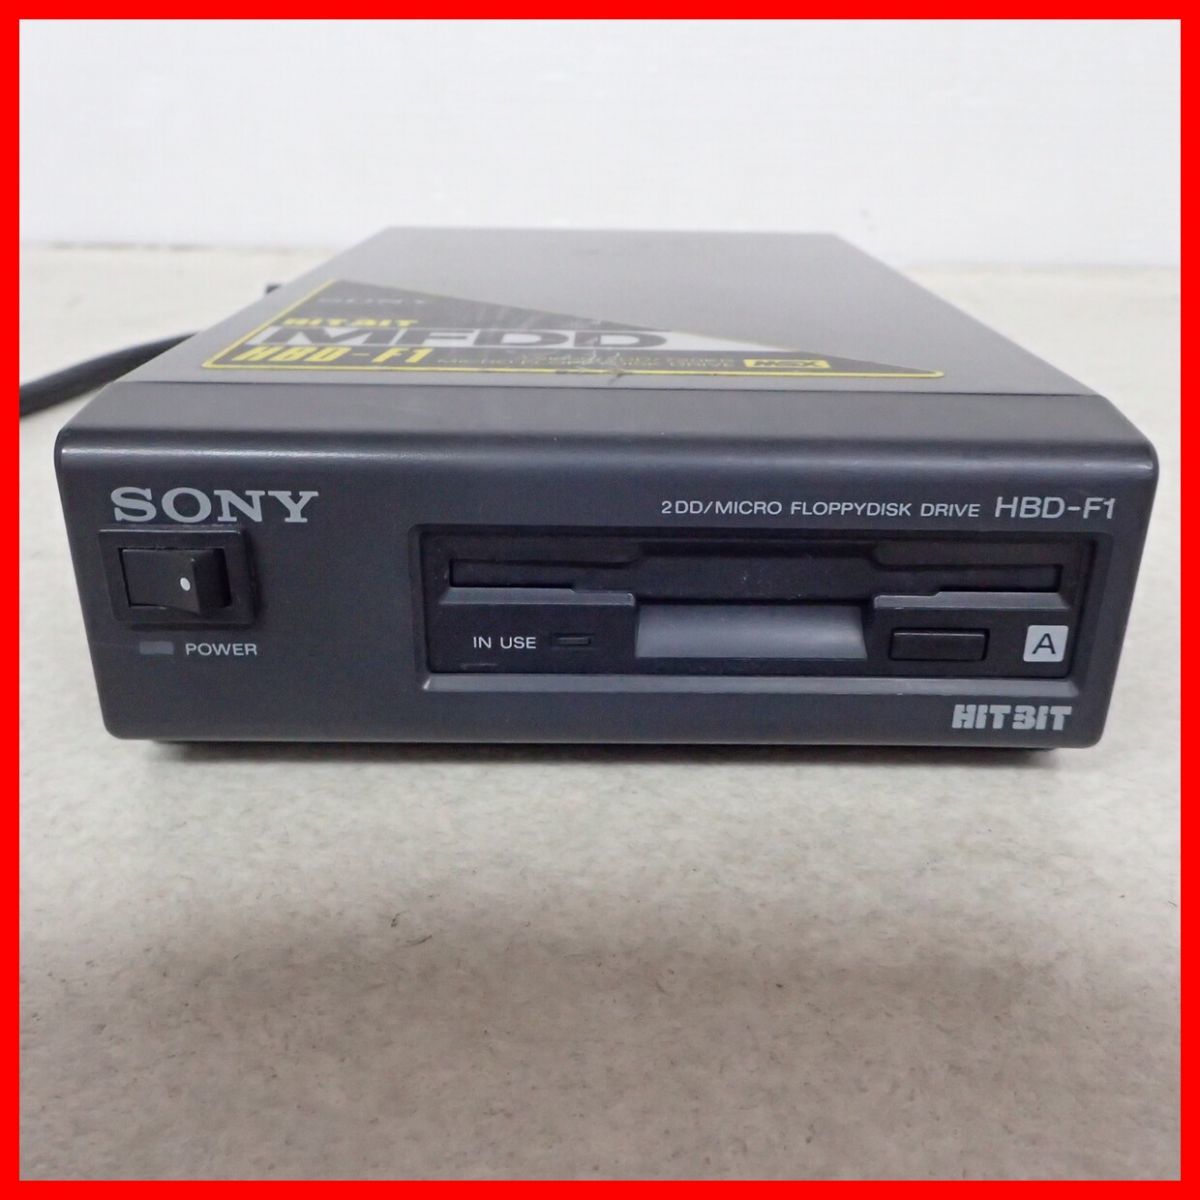 ☆SONY MSX 3.5インチ 2DD外付けFDD HBD-F1 HIT-BIT MFDD ソニー ジャンク【20_画像2